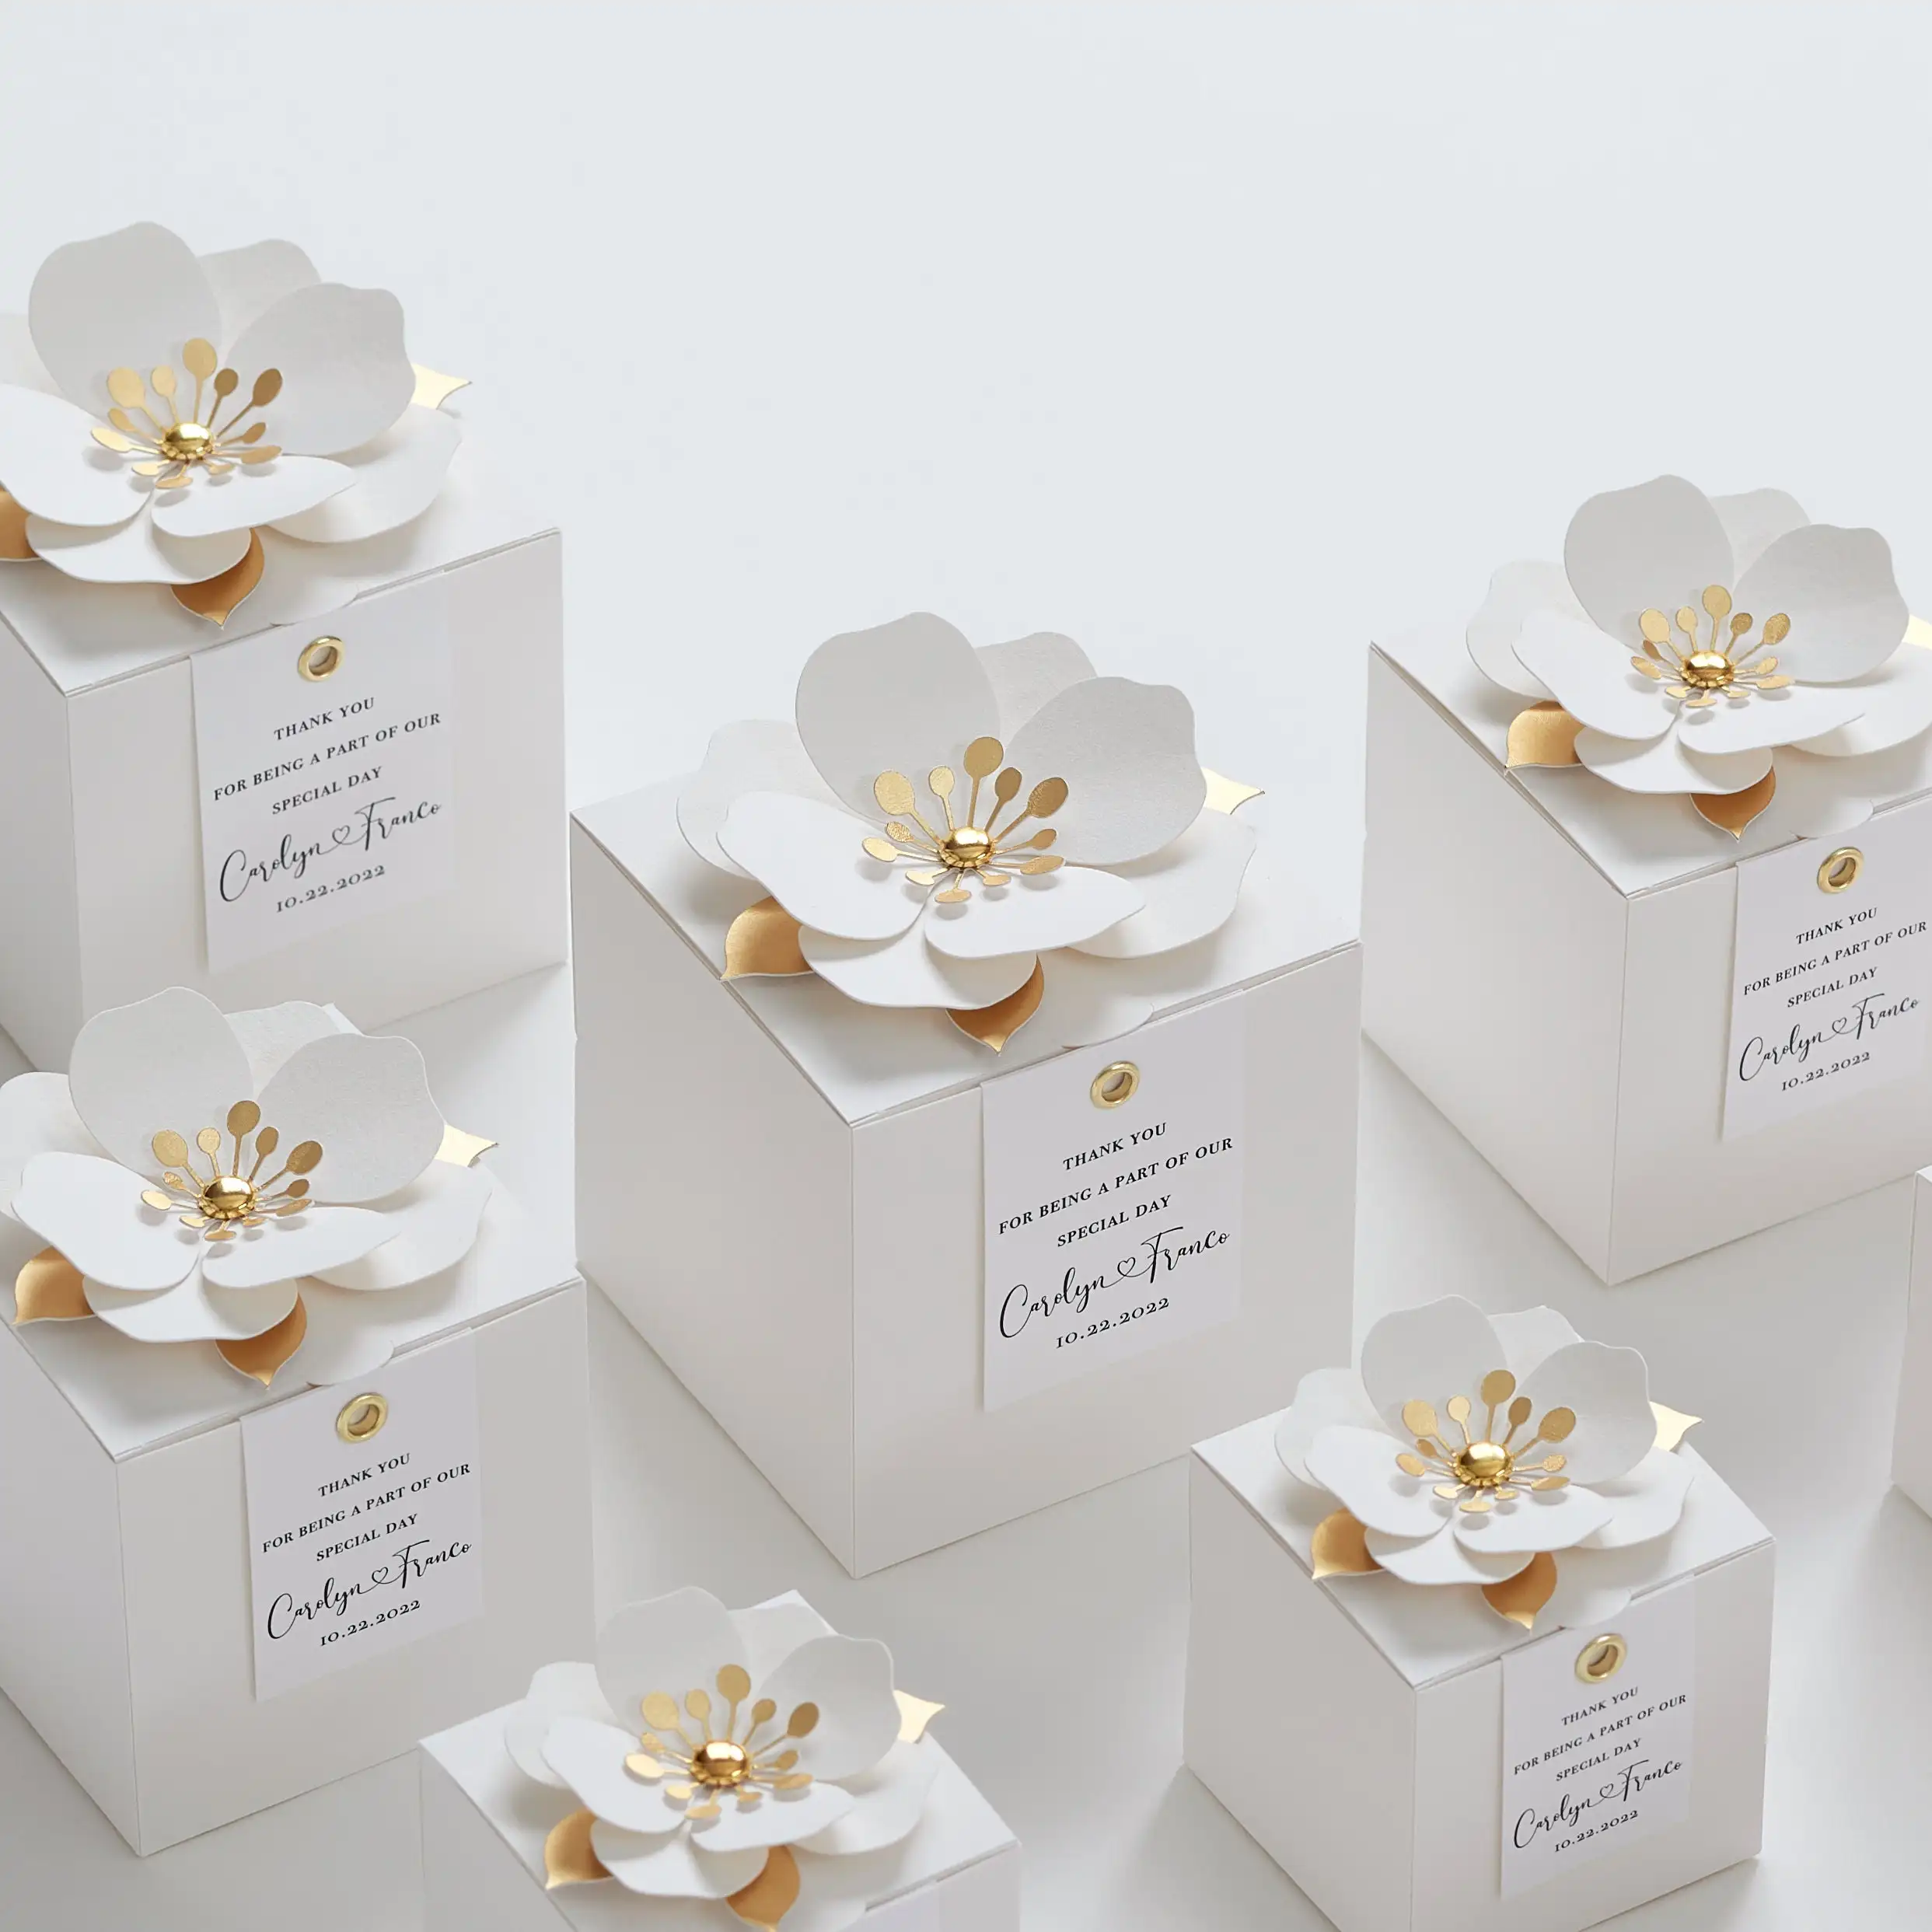 LABON festa nuziale matrimonio compleanno anniversario bomboniera bianca scatole regalo di carta con decorazioni floreali